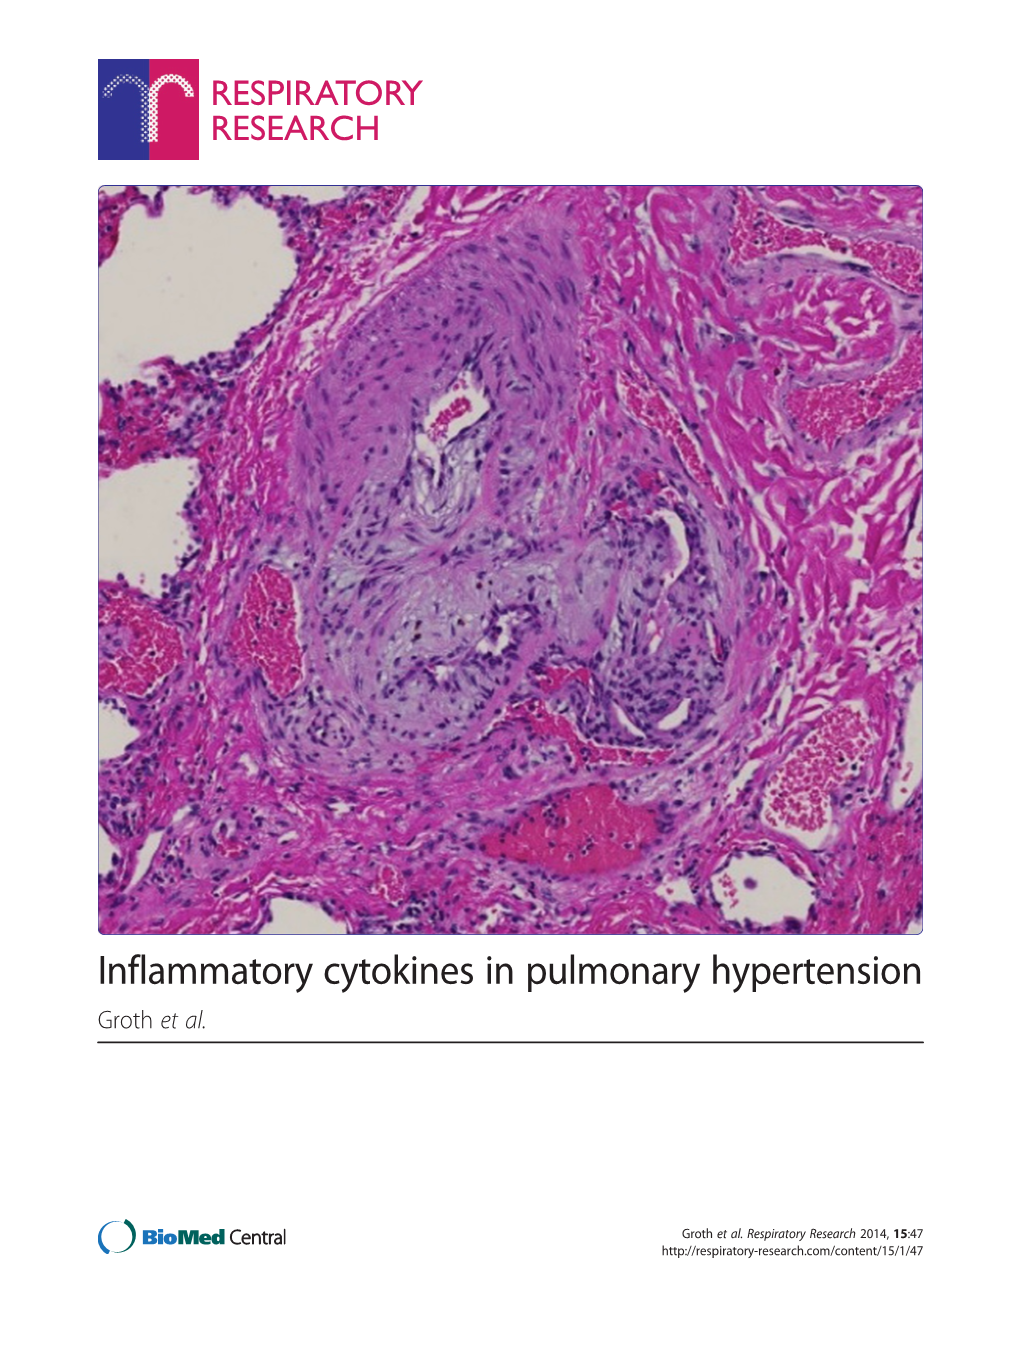 Inflammatory Cytokines in Pulmonary Hypertension Groth Et Al